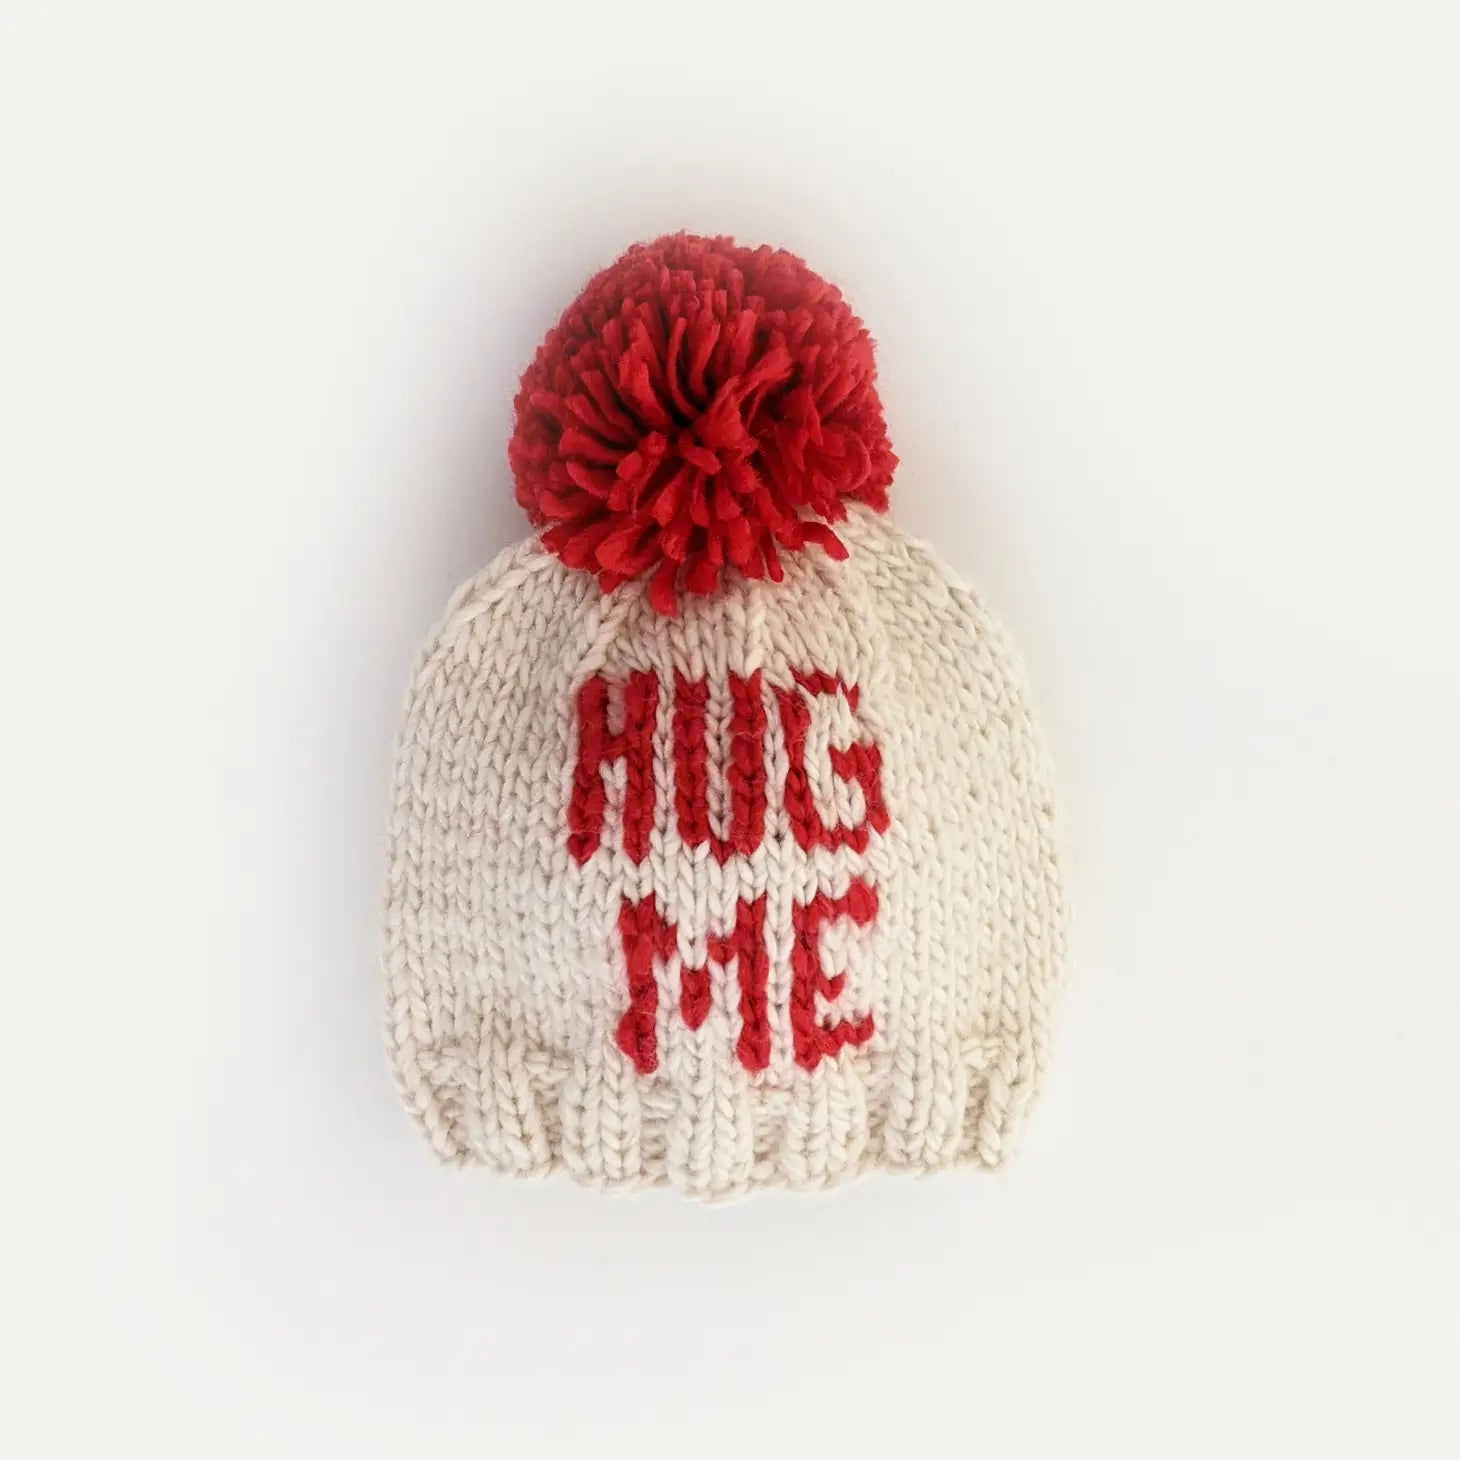 Hug Me Valentine's Day Hand Knit Beanie Hat